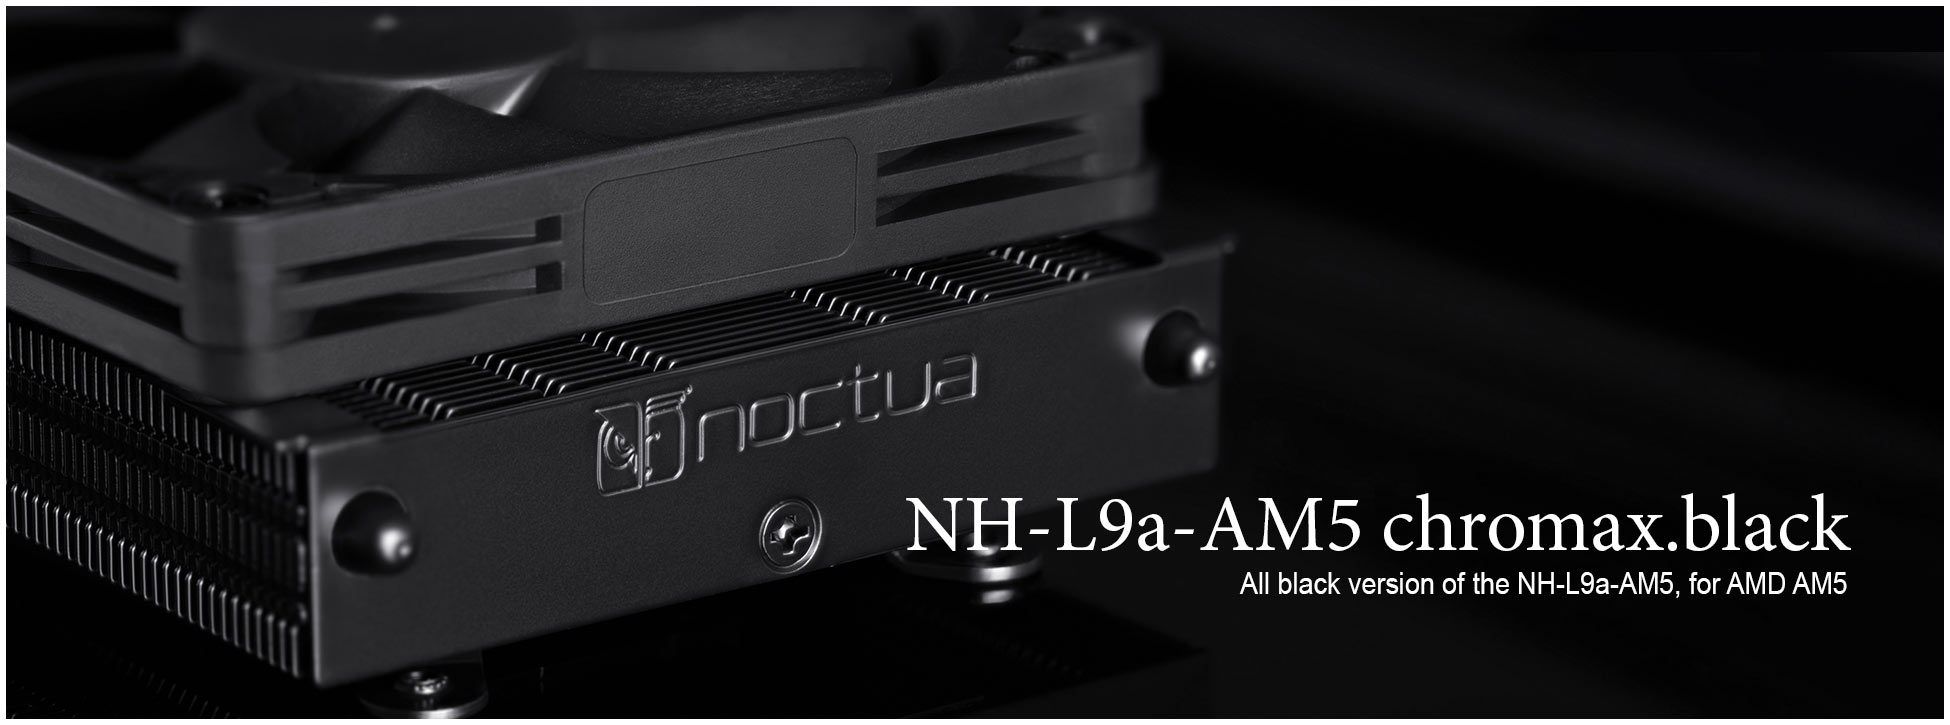 NH-L9a-AM4 Low Profile CPU Cooler